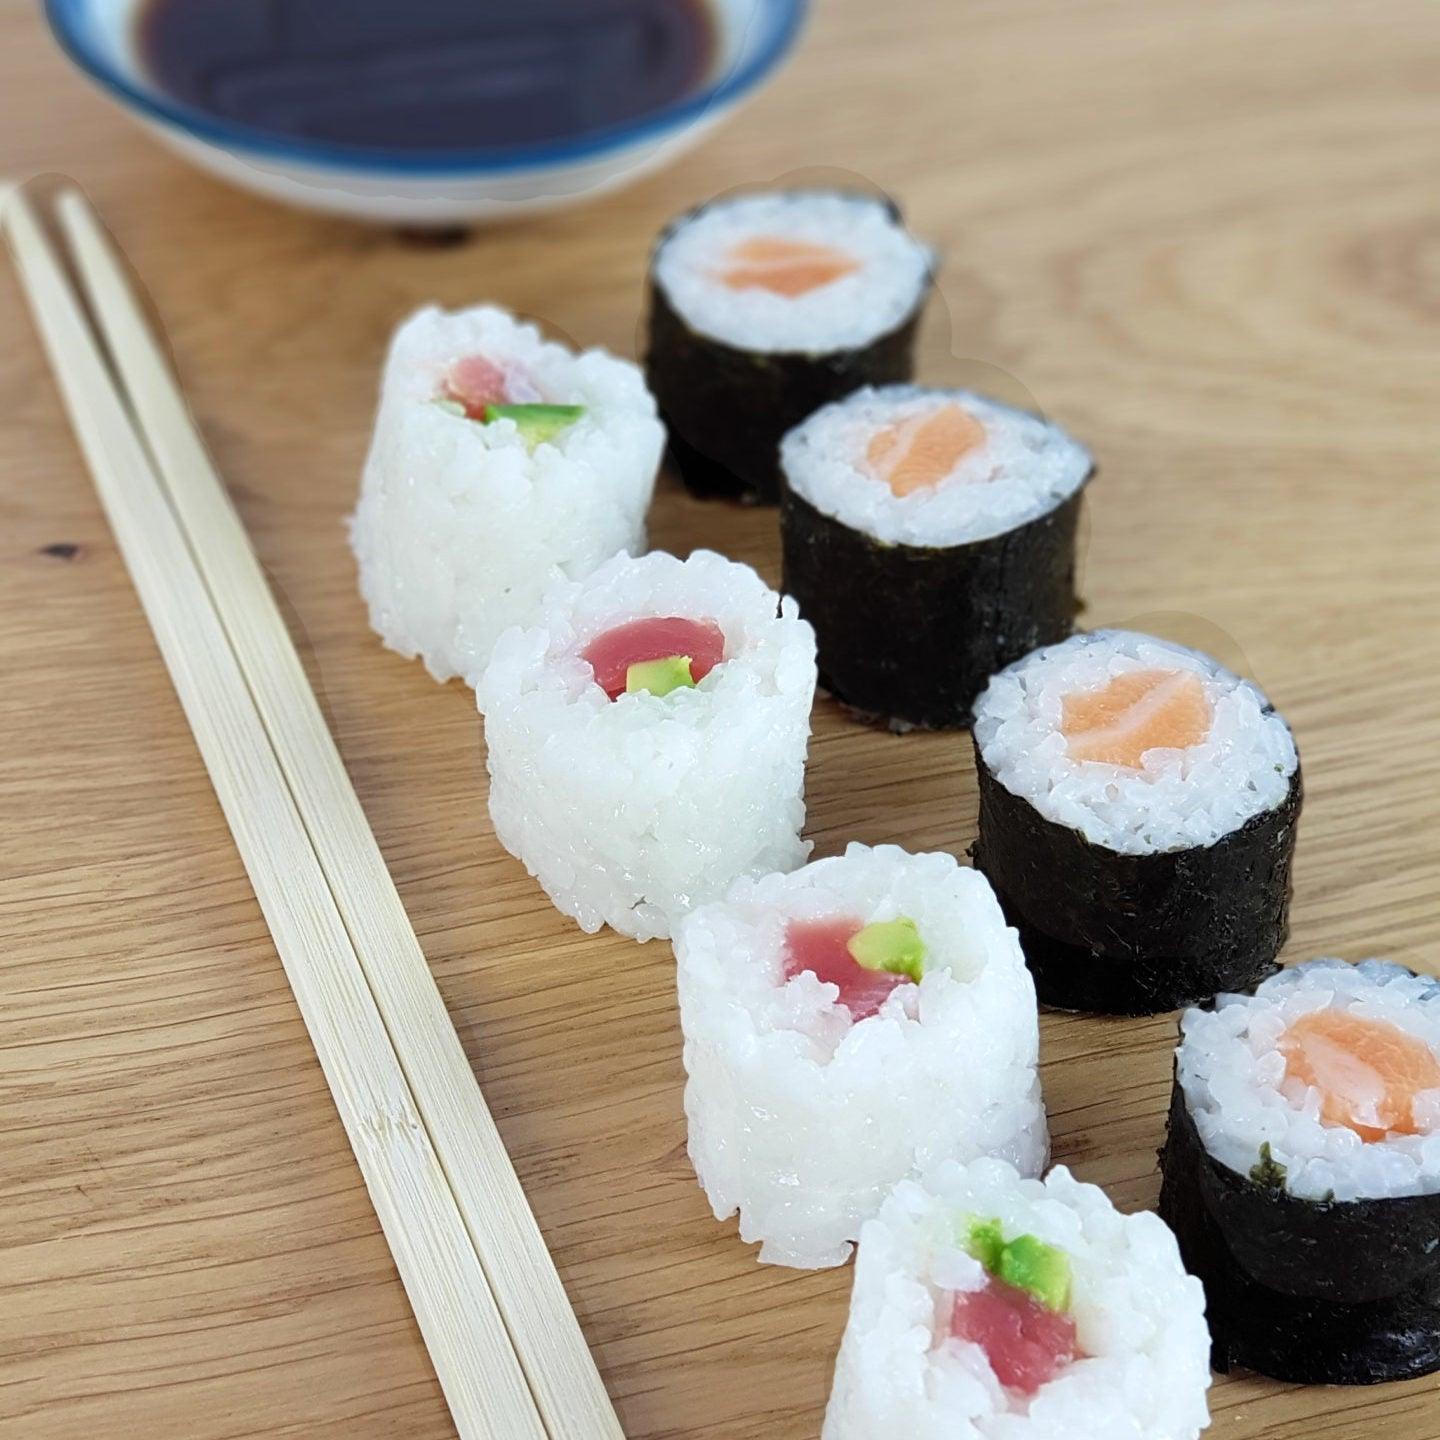 Appareil à sushi